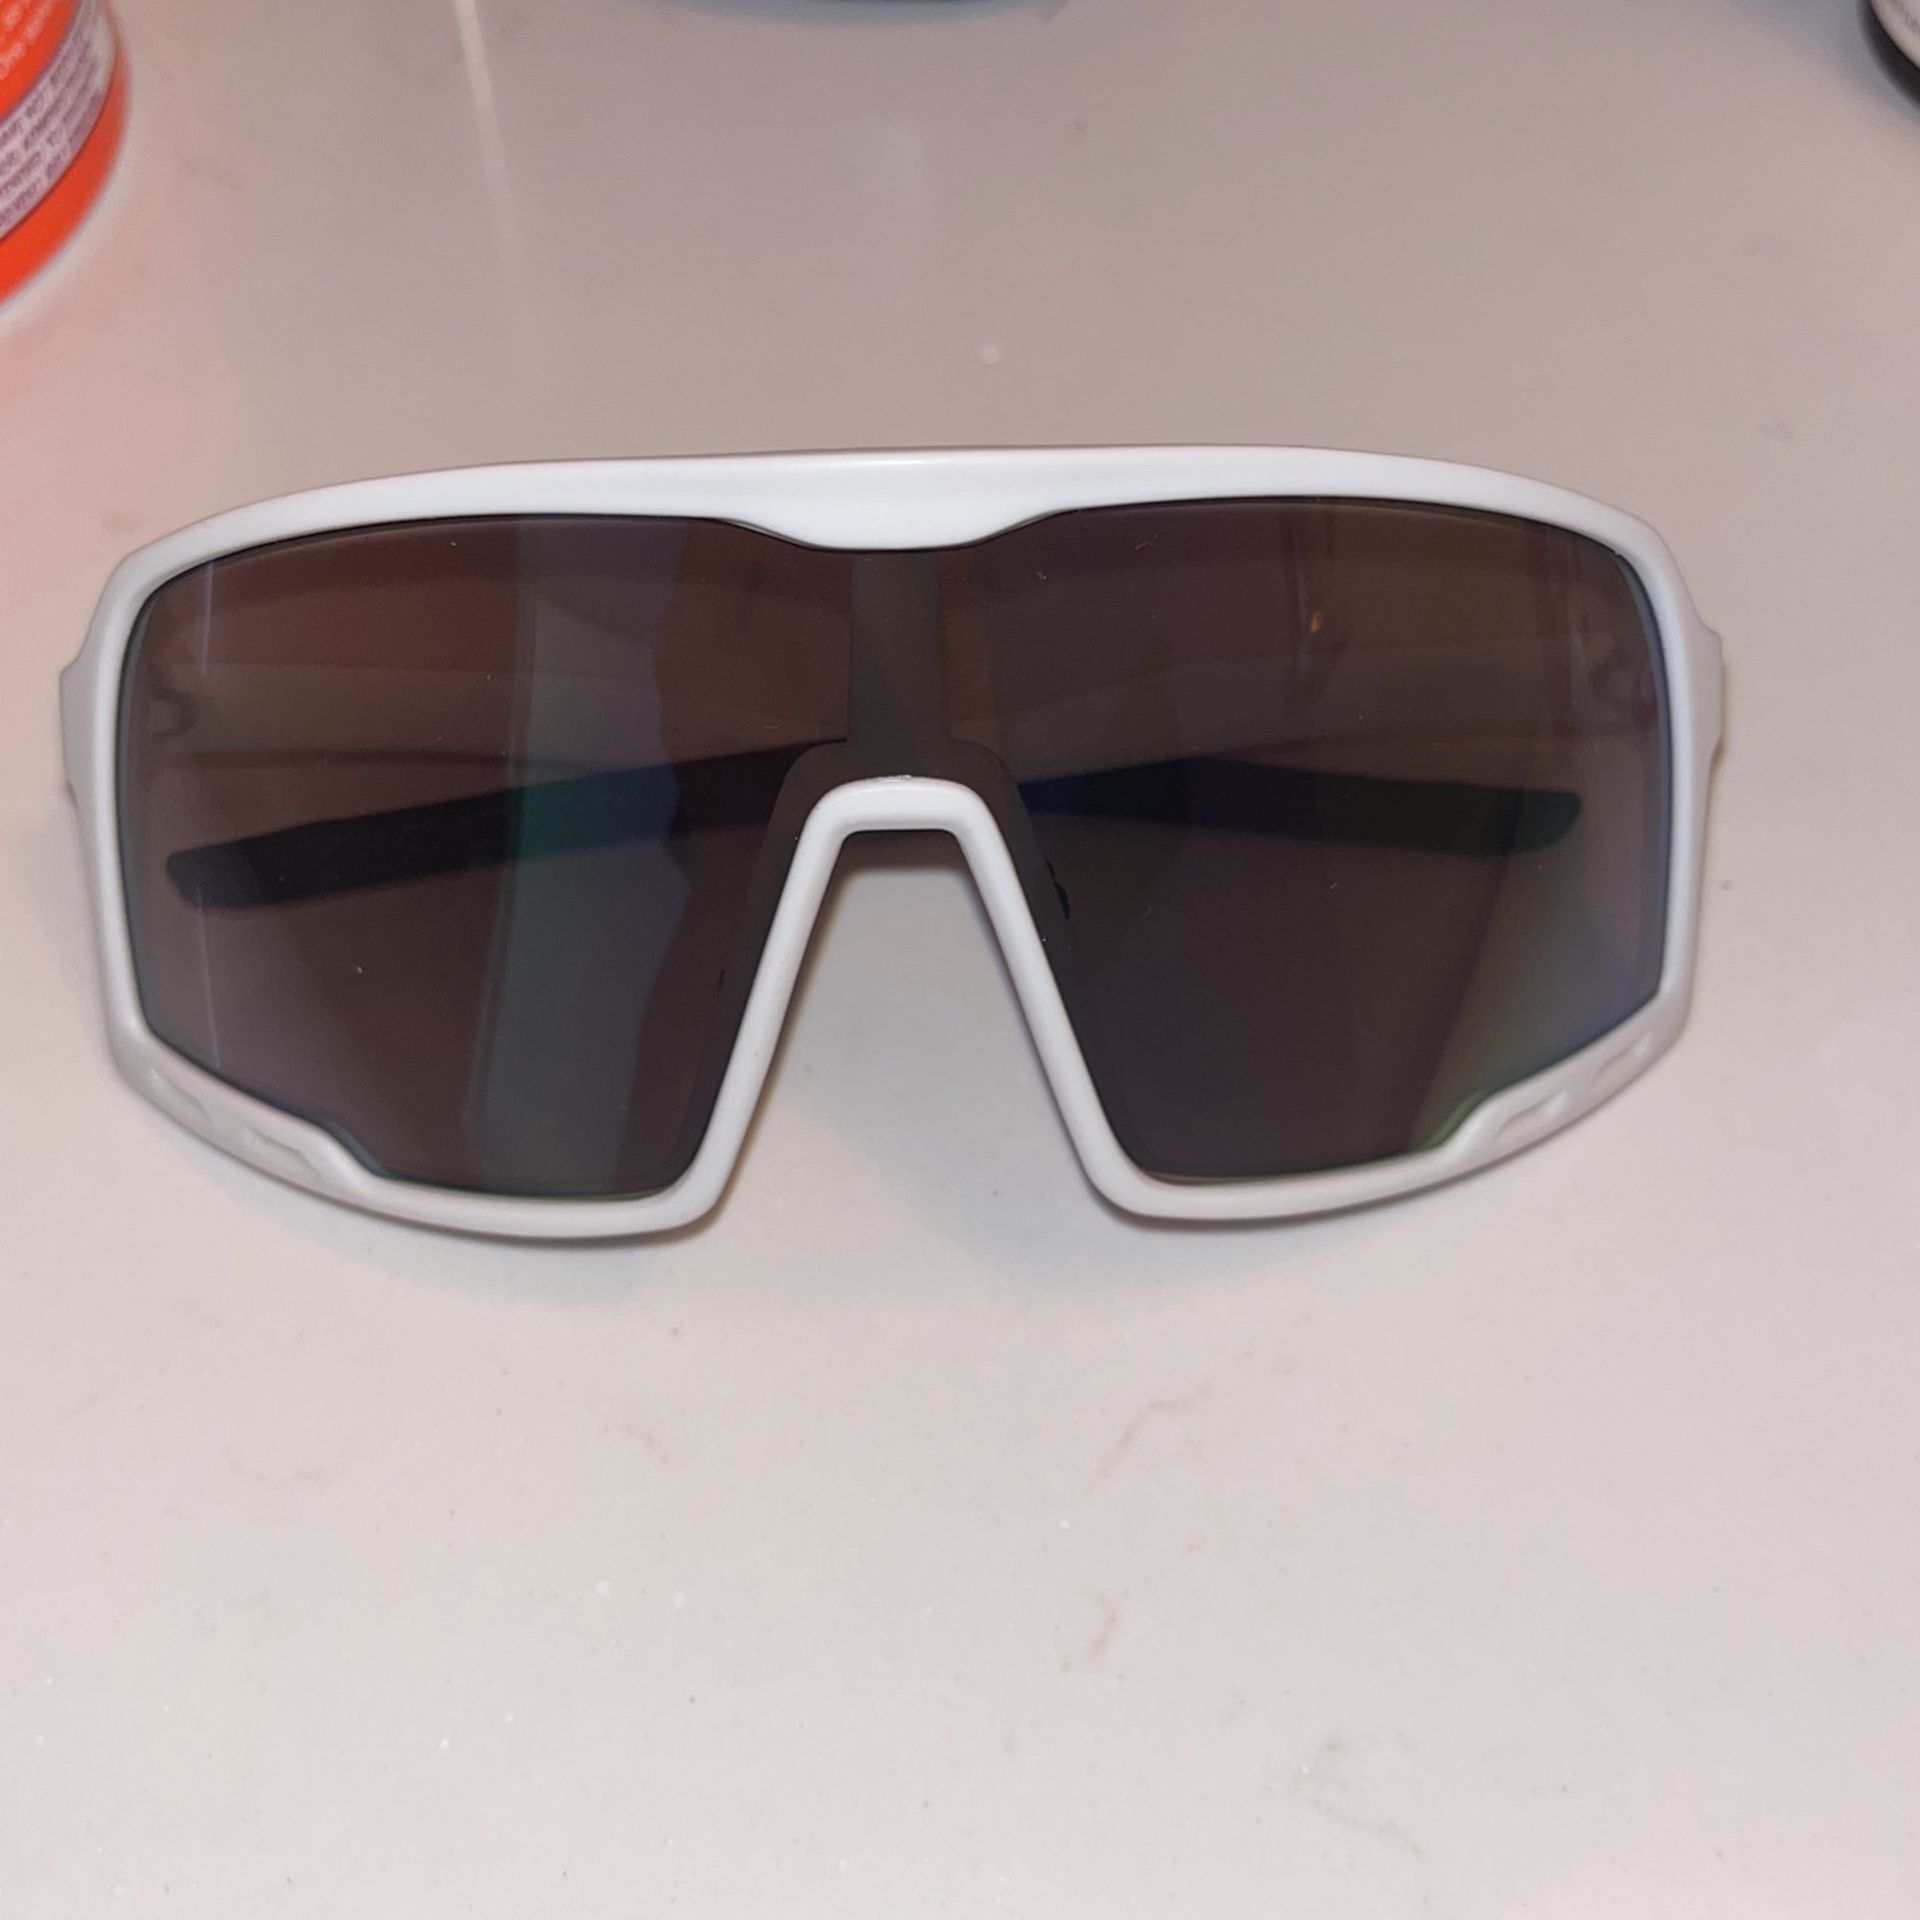 Aero Sutro Sunglasses 